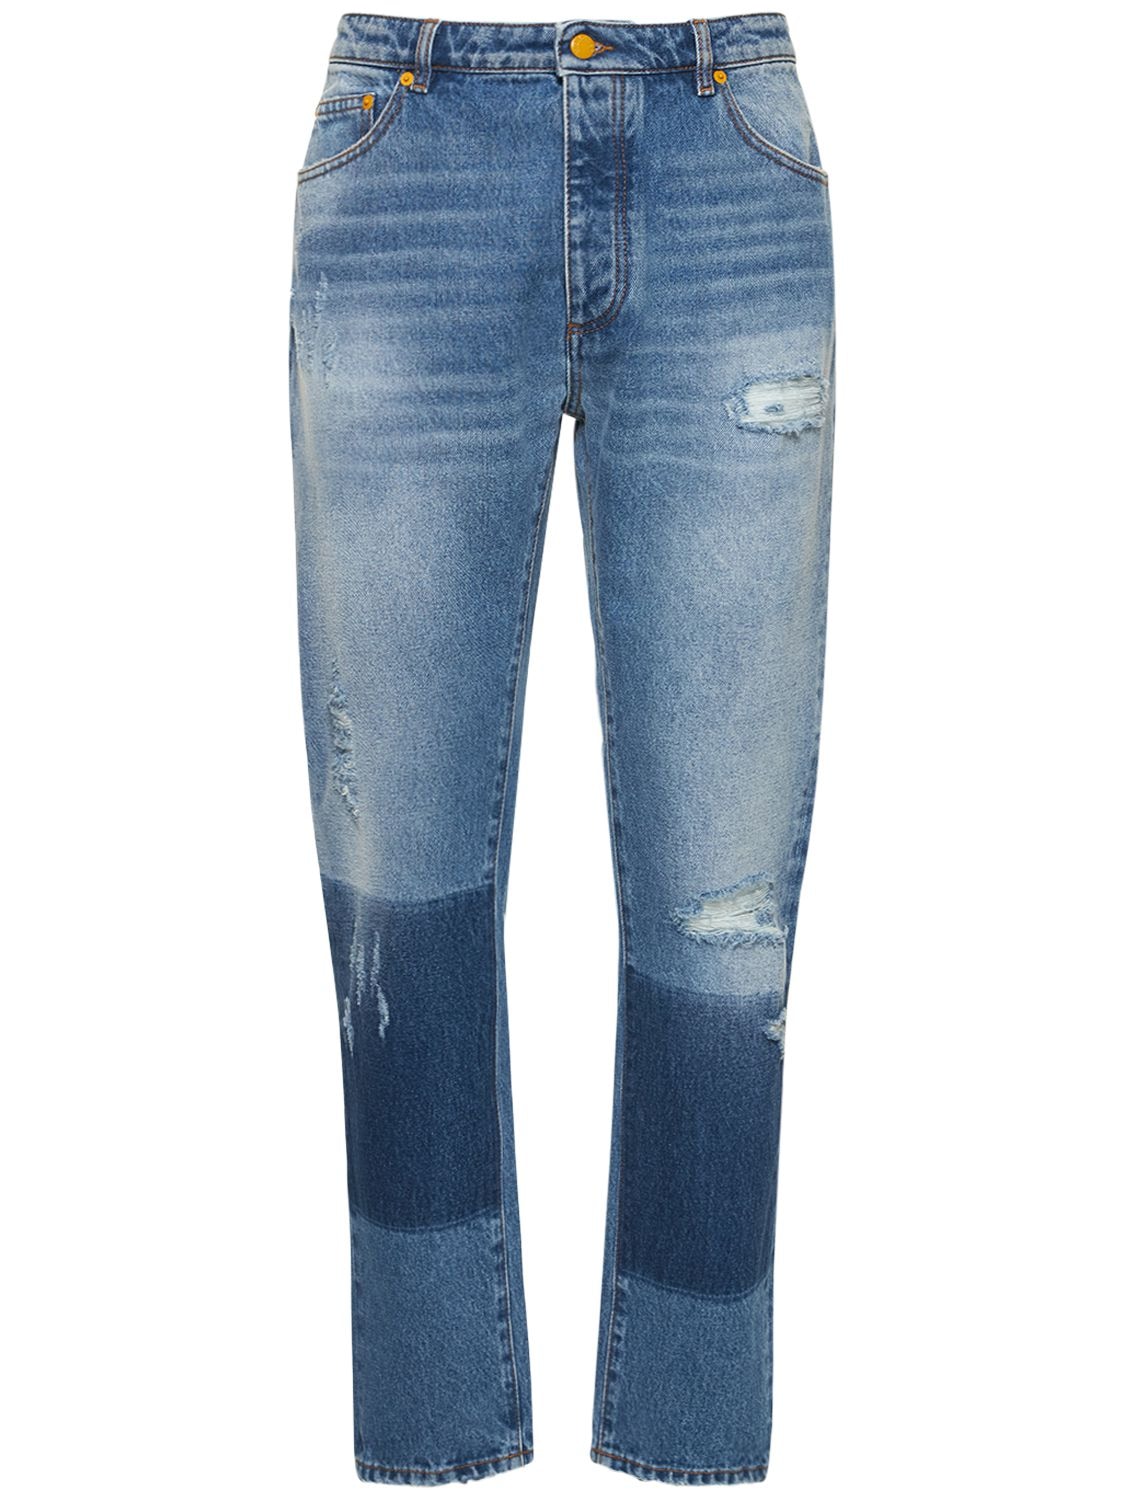 MONCLER GENIUS Vintage-effect Cotton Denim Jeans